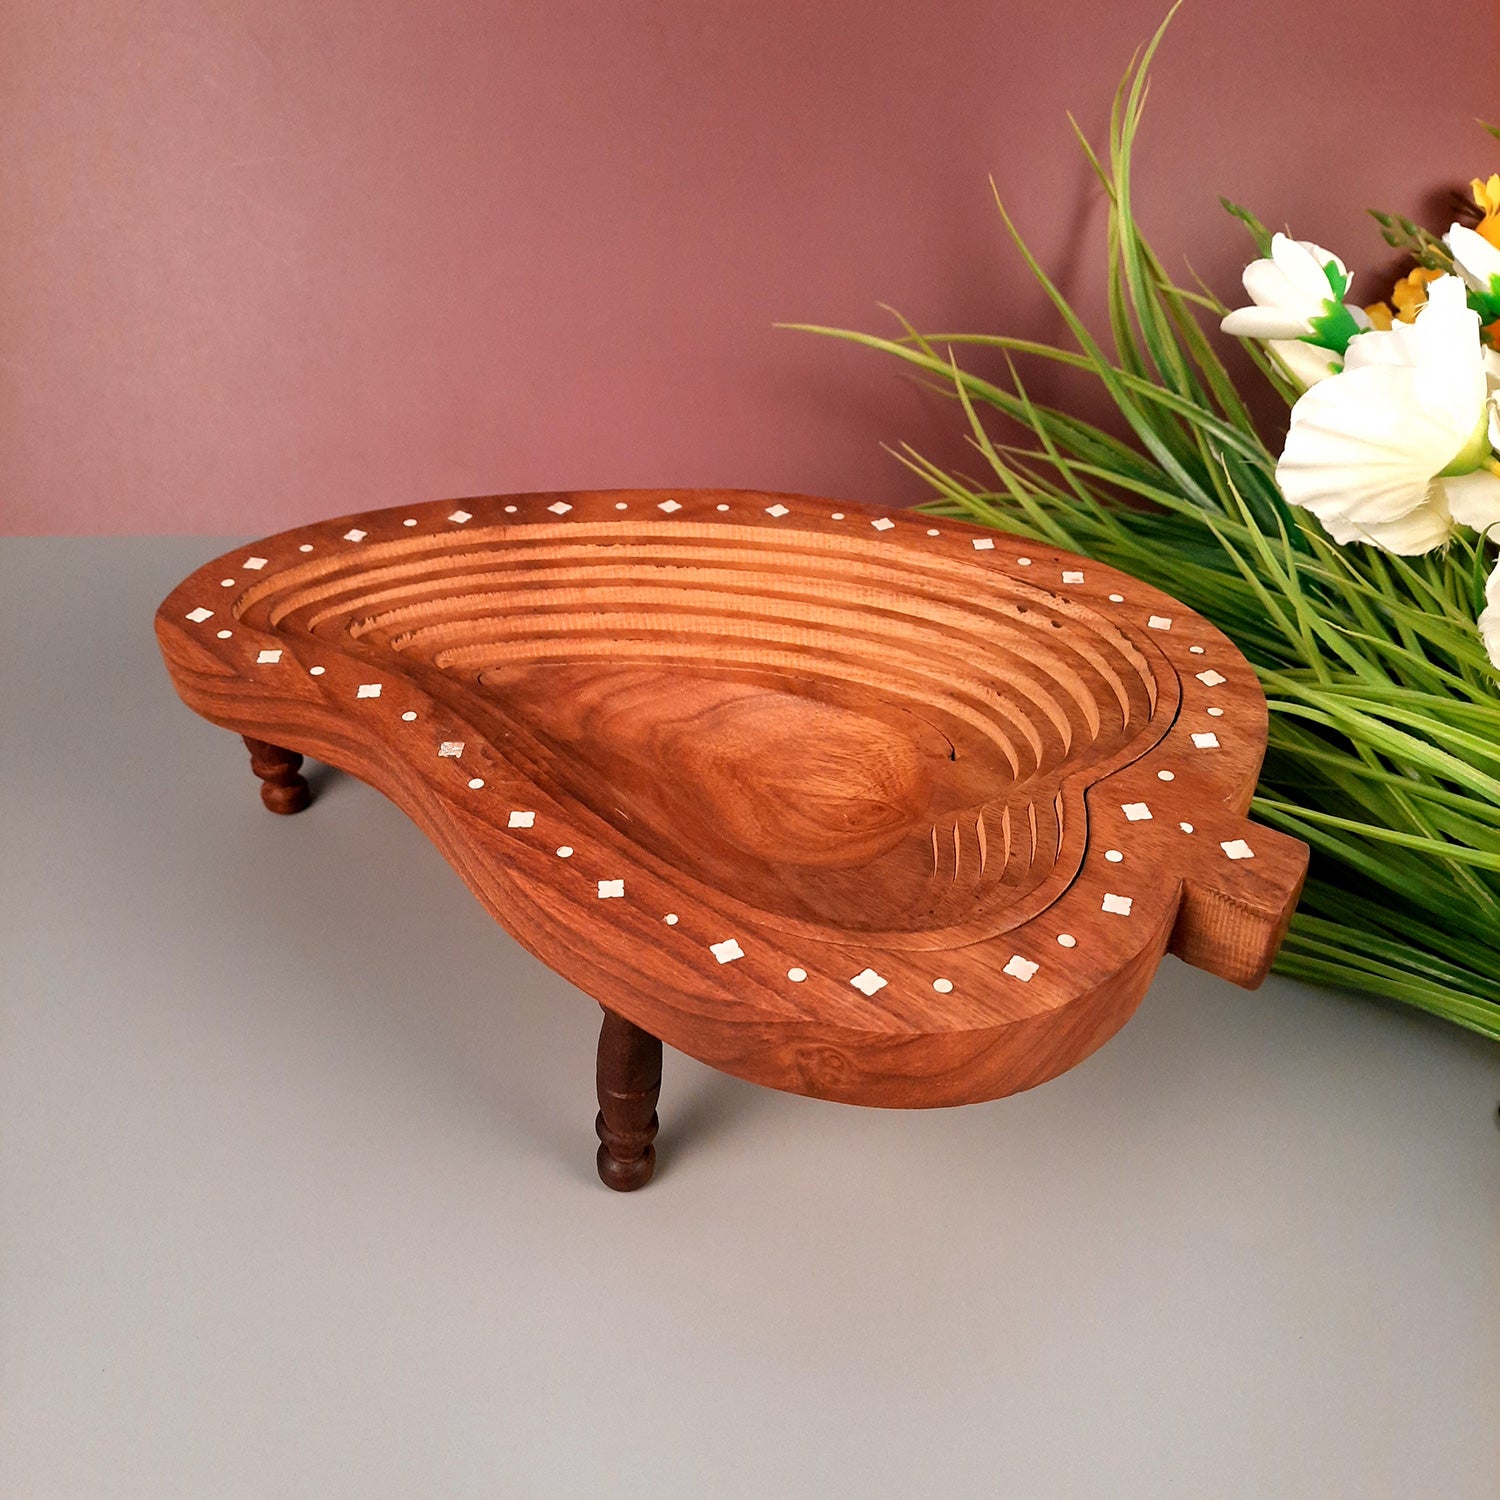 Wooden Fruit & Vegetable Basket | Foldable Fruit Basket - for Serving & Dining Table Decor - 14 Inch - Apkamart